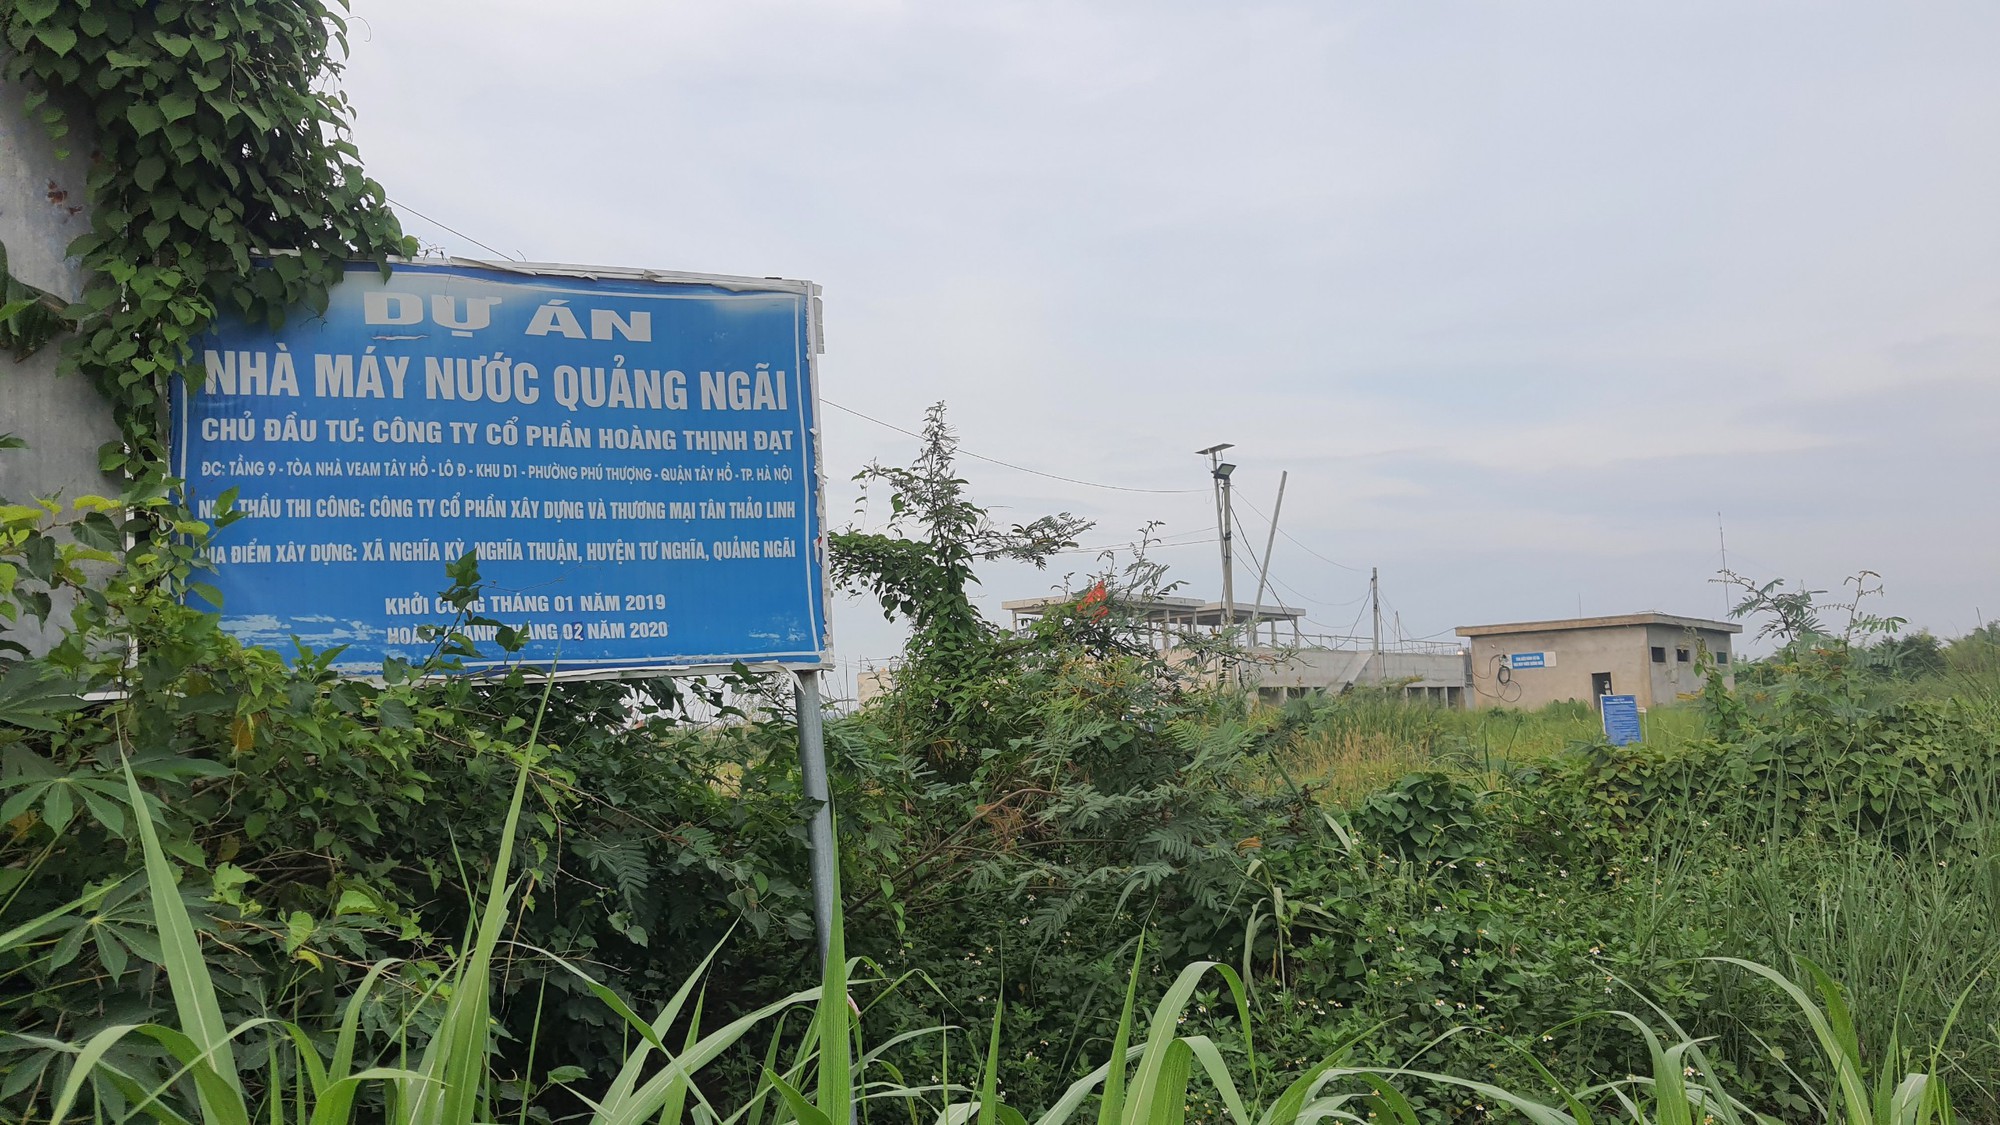 Dự án nước sạch lớn nhất Quảng Ngãi thi công cầm chừng, trễ tiến độ nhiều năm - Ảnh 1.